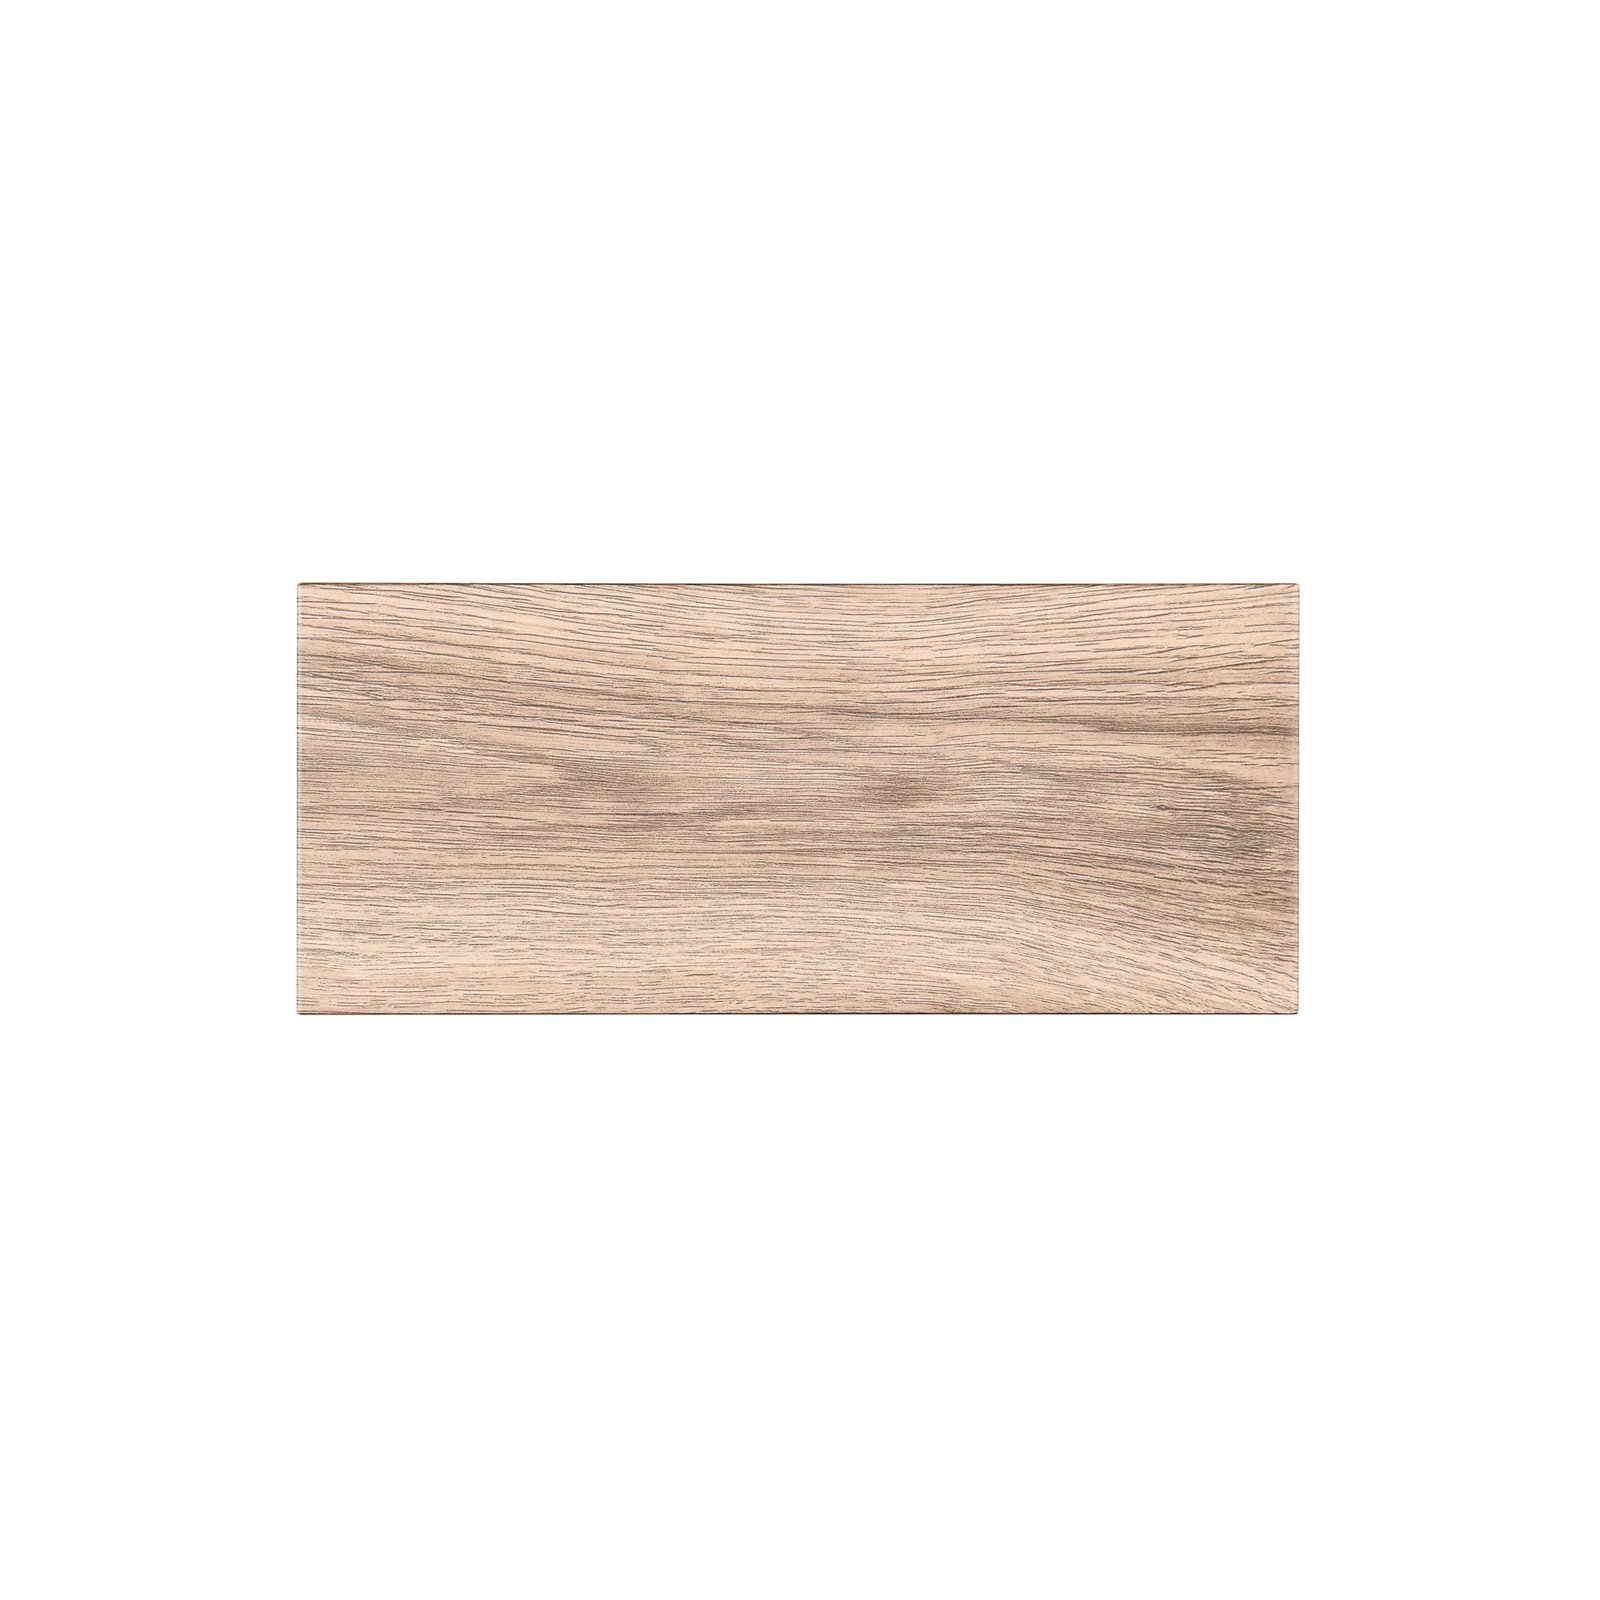 Aplique de exterior Mayenne, color madera, up- & downlight, angular